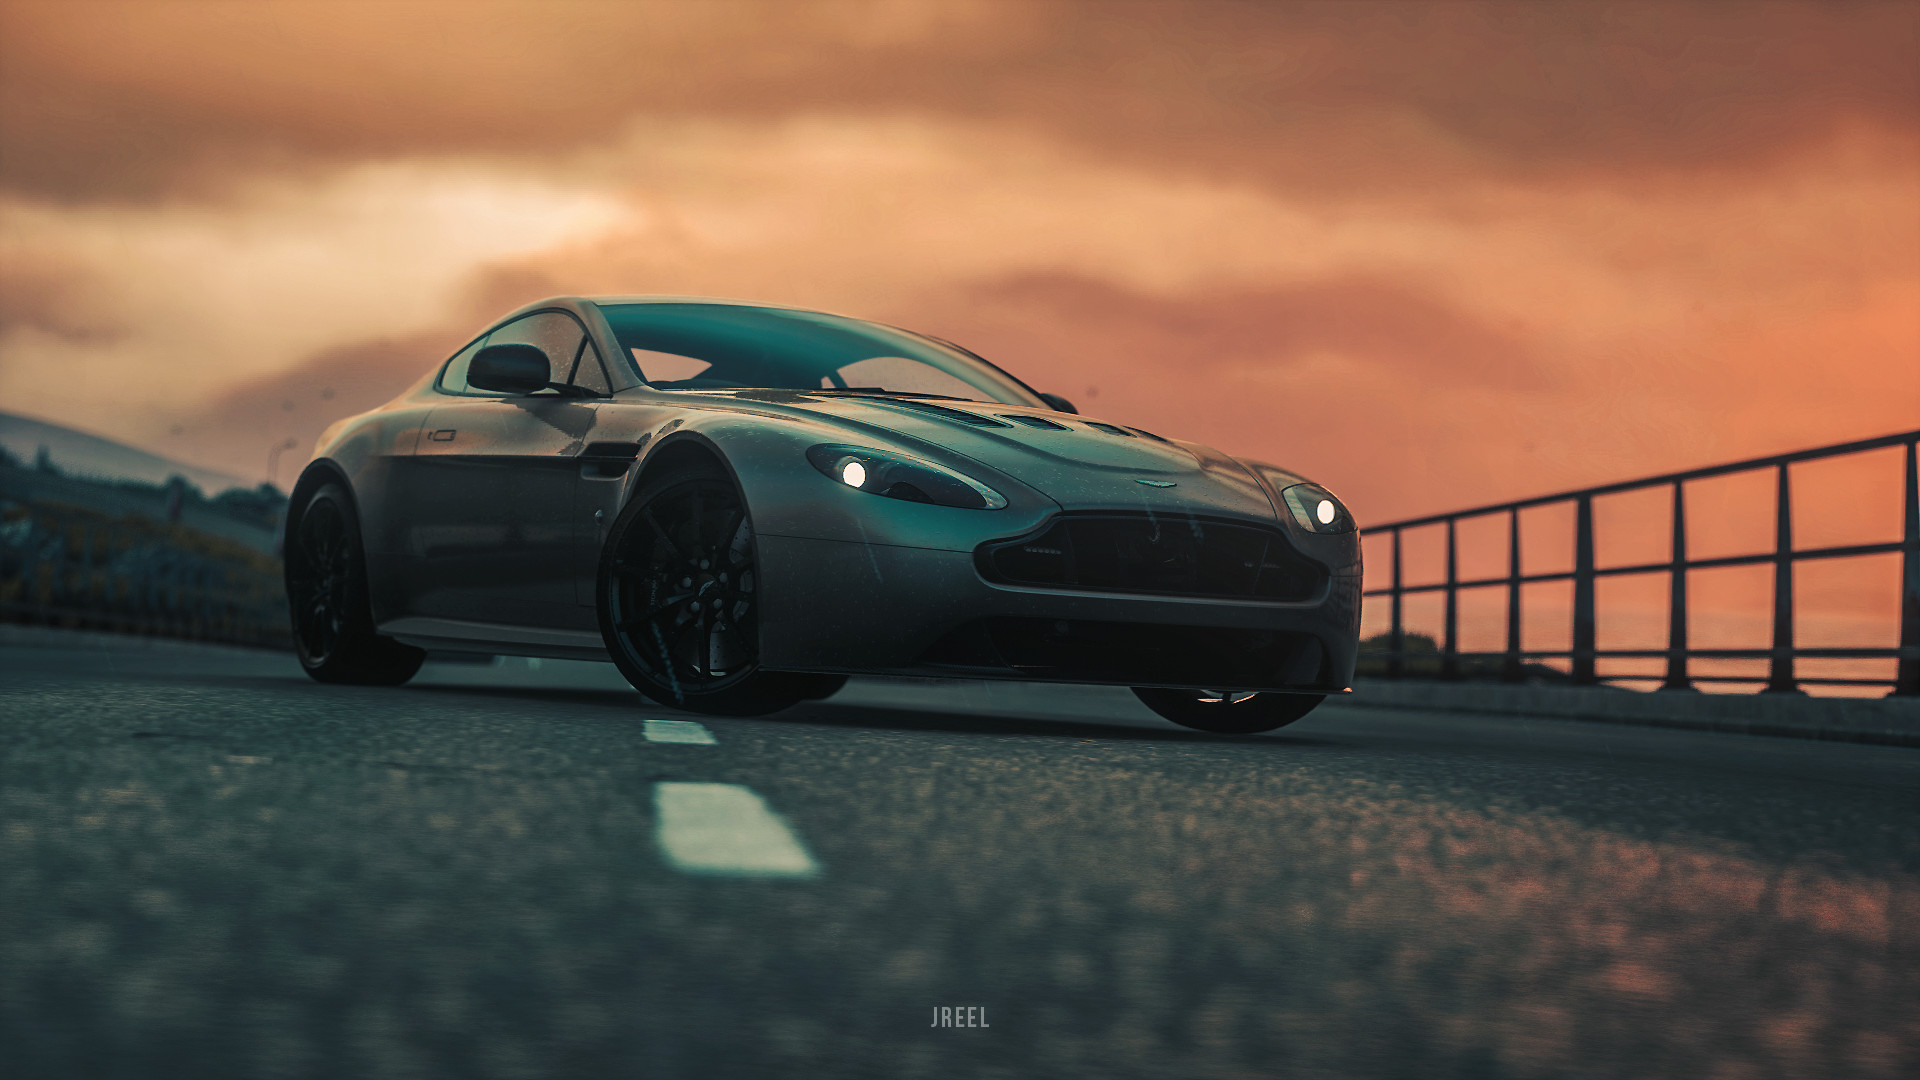 Descarga gratuita de fondo de pantalla para móvil de Aston Martin, Videojuego, Aston Martin V12 Vantage, Driveclub.